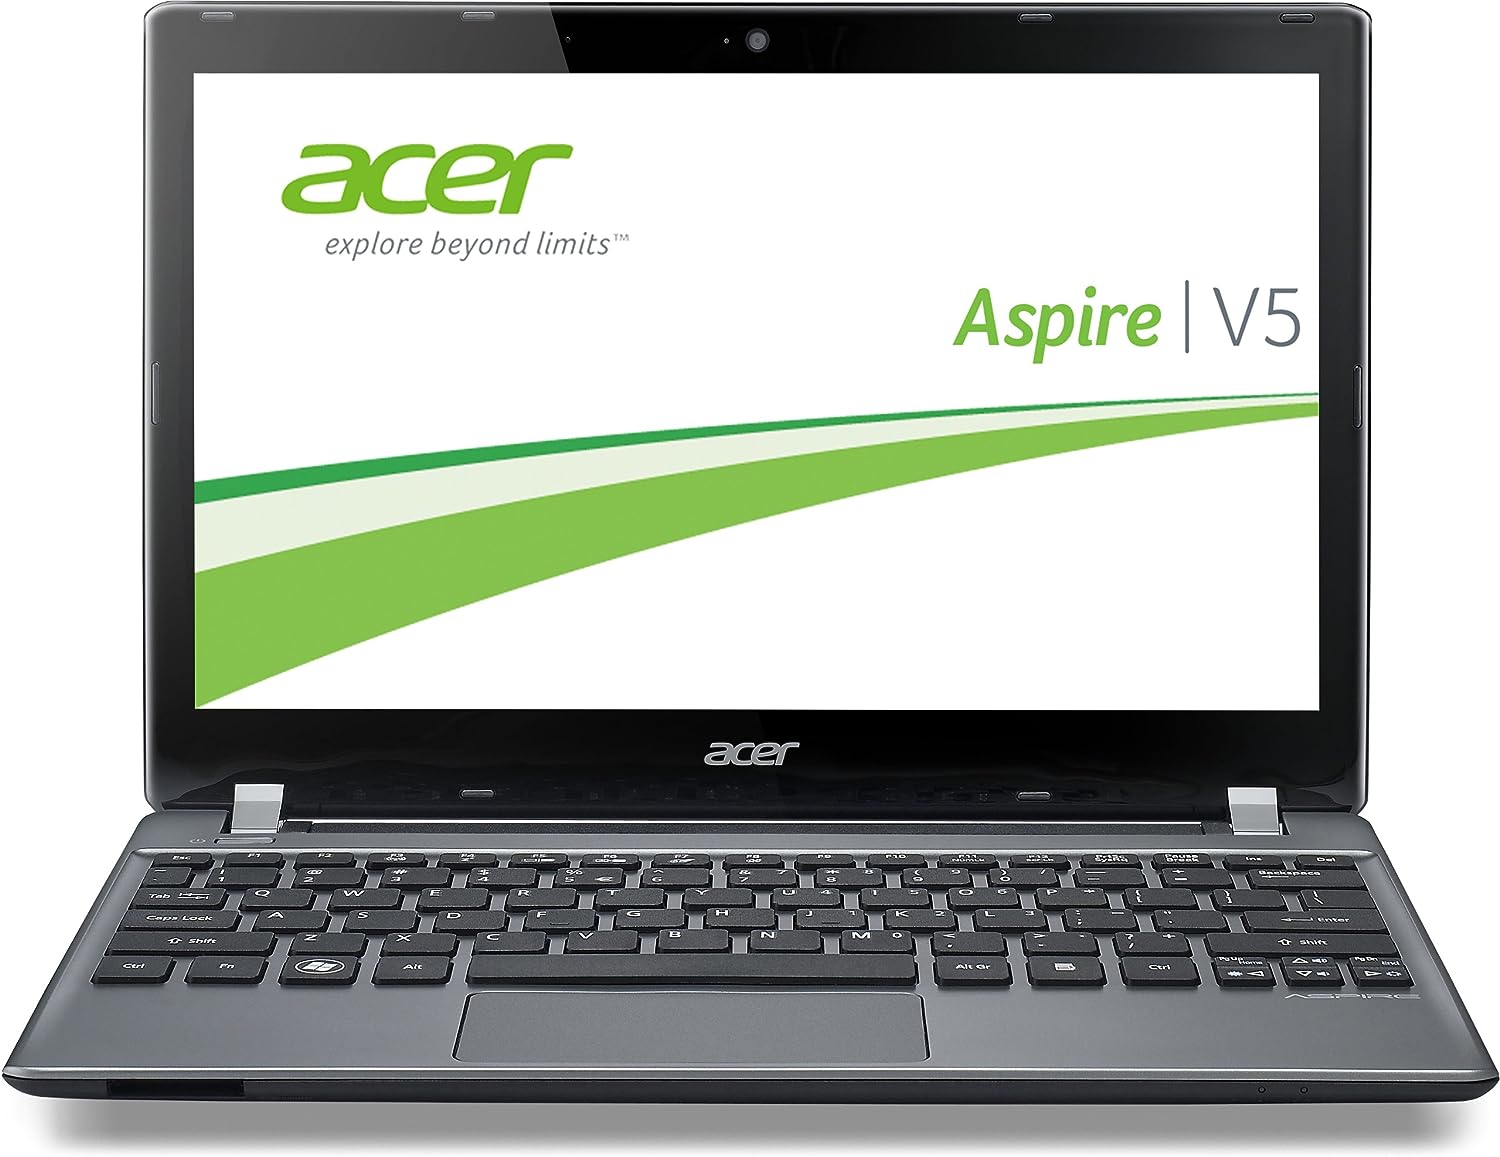 Acer Aspire V5-571 Notebook ile Uyumlu SSD / HDD Kutusu Listesi - Acer  Aspire V5-571 Notebook Uyumlu SSD HDD Kutusu / Bilendenal.com Doğru ürünü  bilendenal